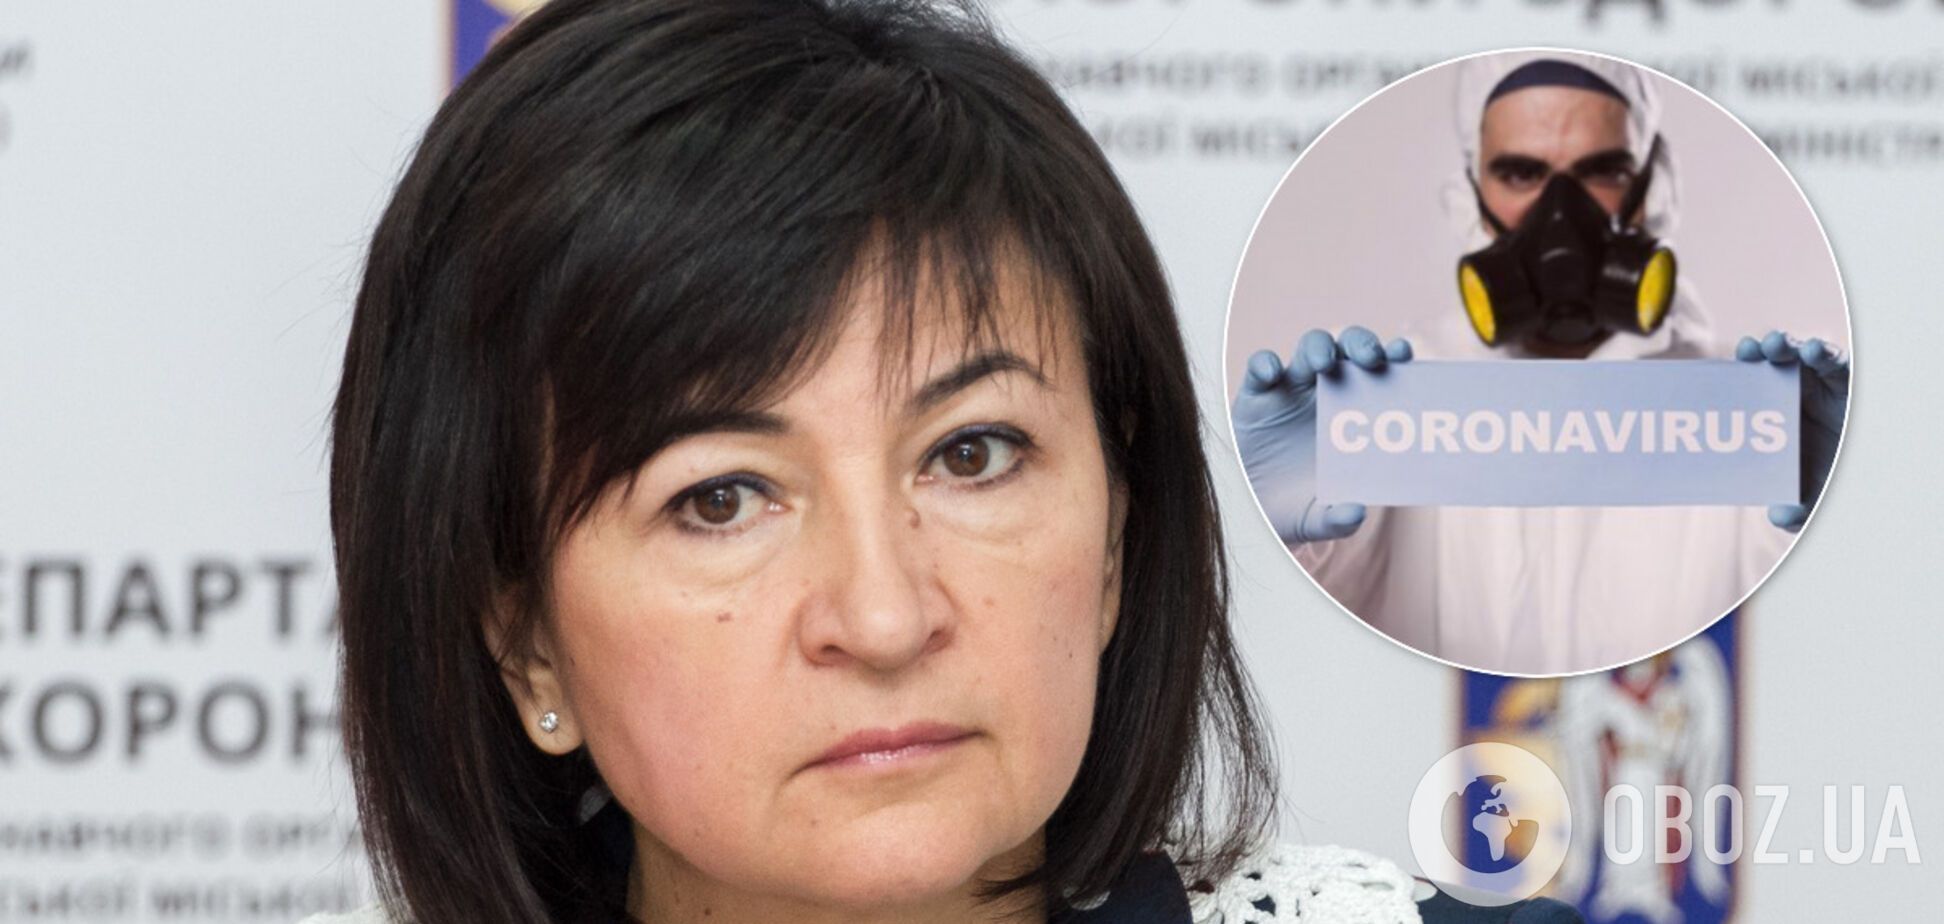 Глава департамента здравоохранения Киева отказалась от самоизоляции из-за коронавируса